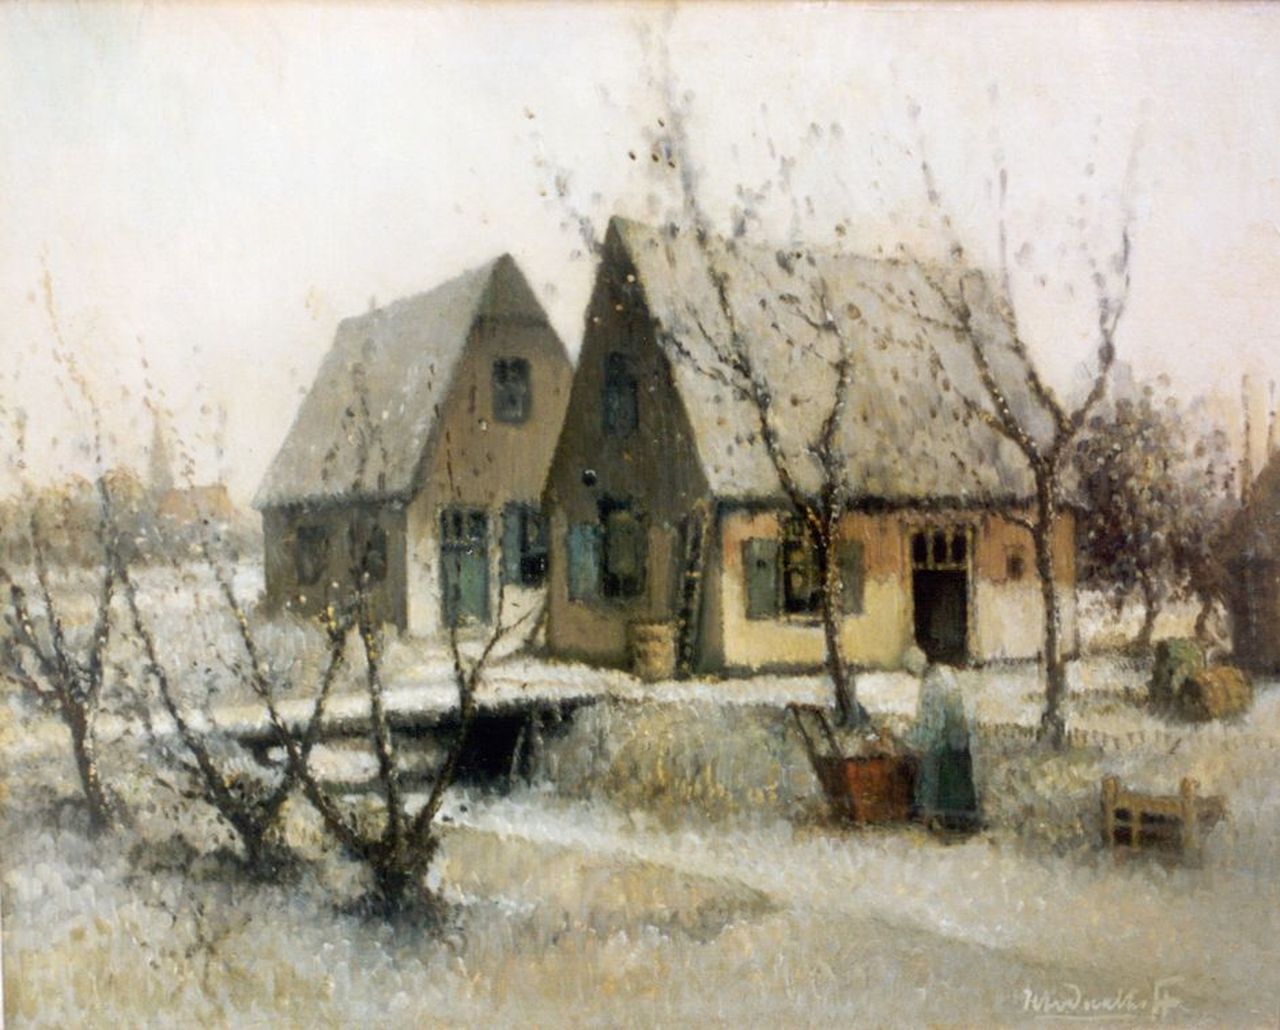 Daalhoff H.A. van | Hermanus Antonius 'Henri' van Daalhoff, A farm in winter, oil on canvas 37.2 x 46.2 cm, signed l.r.